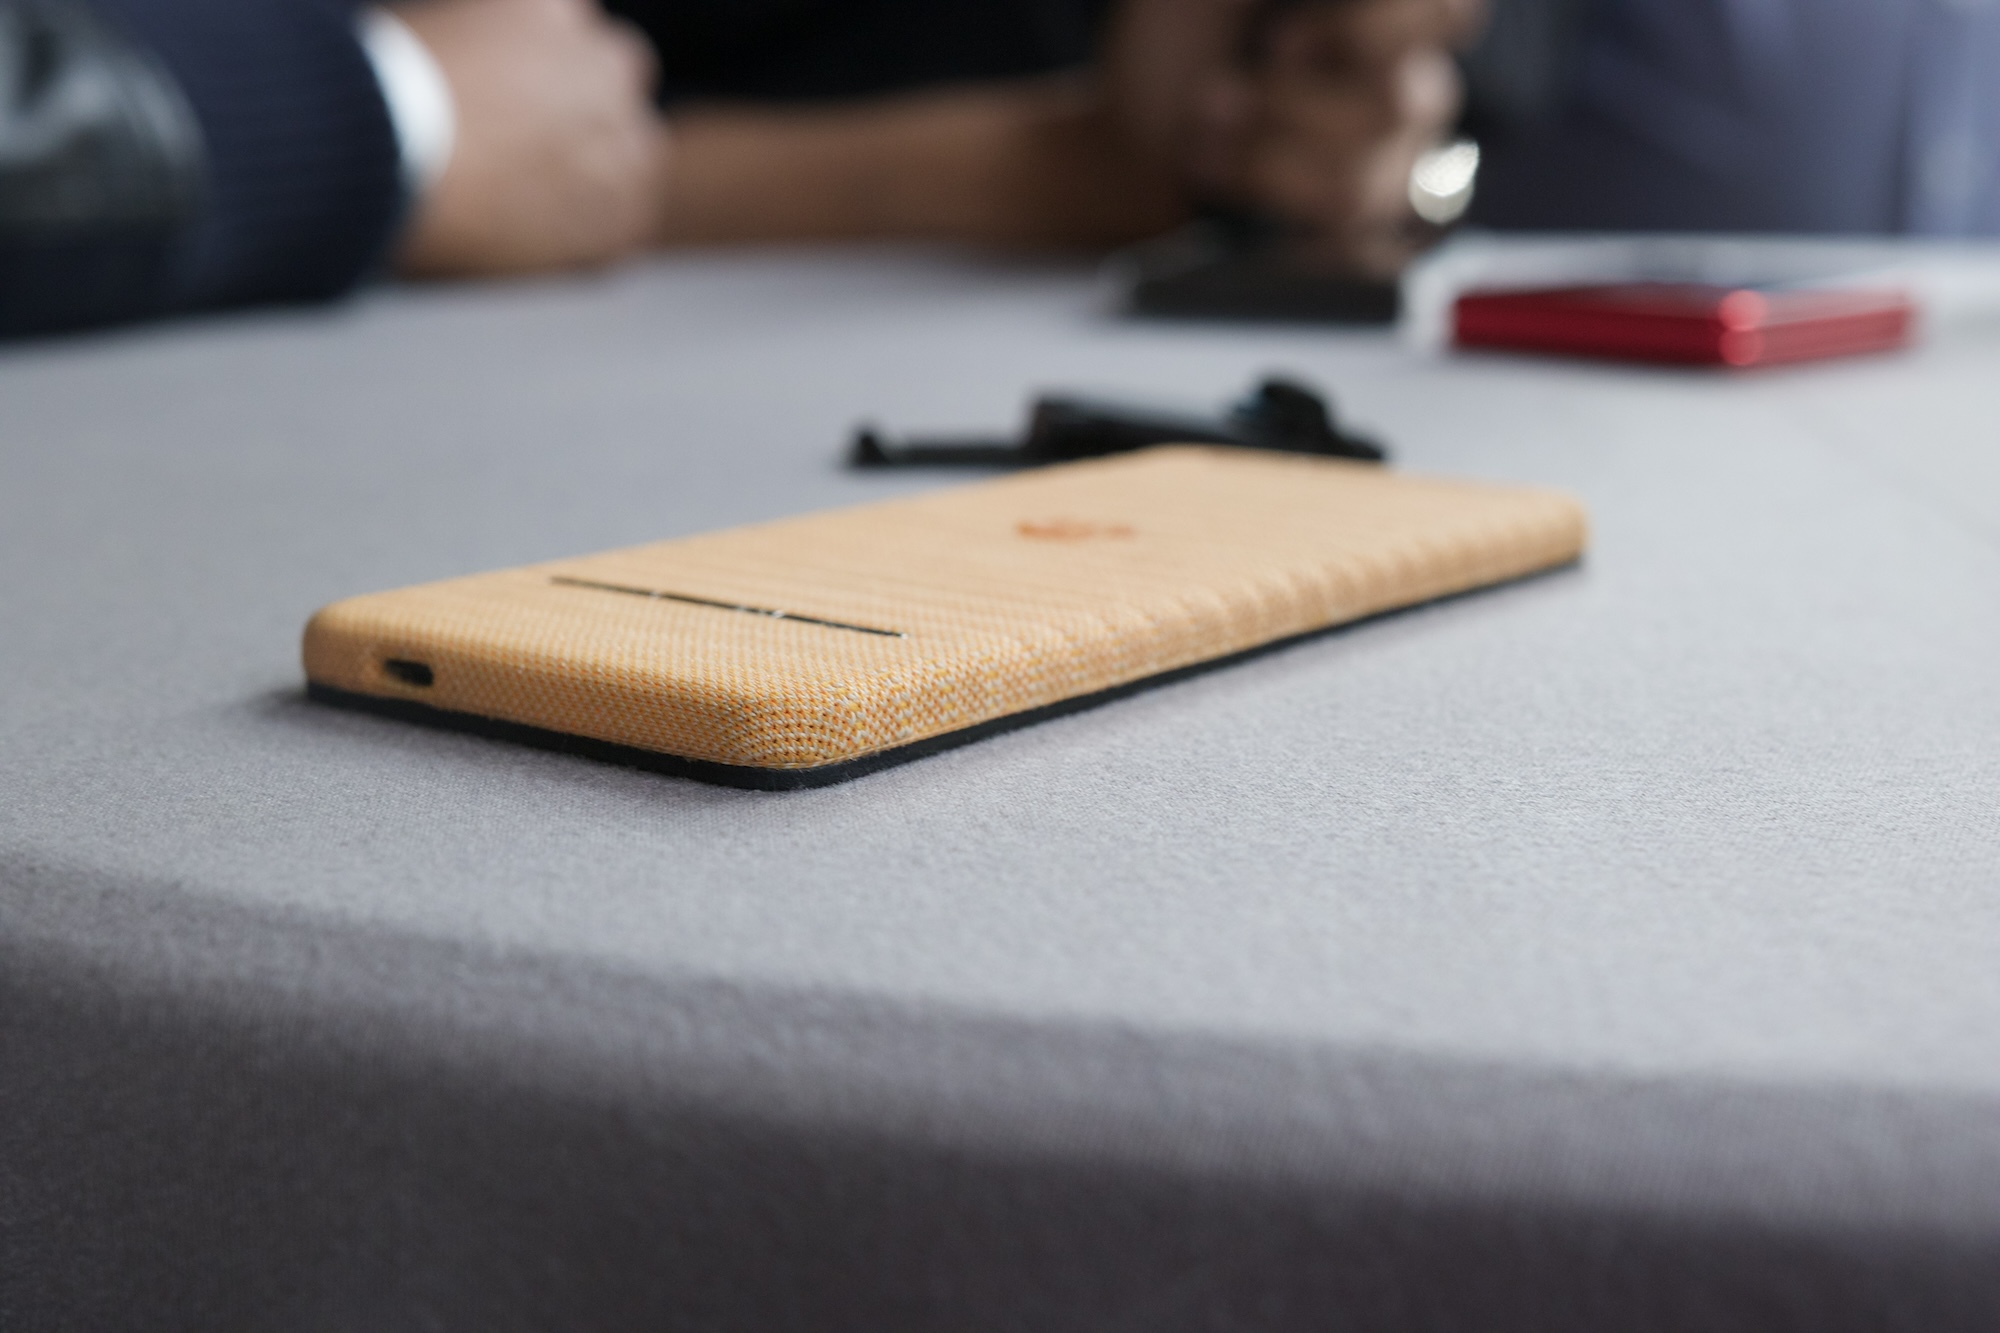 Teléfono de concepto de Motorola boca abajo sobre una mesa.